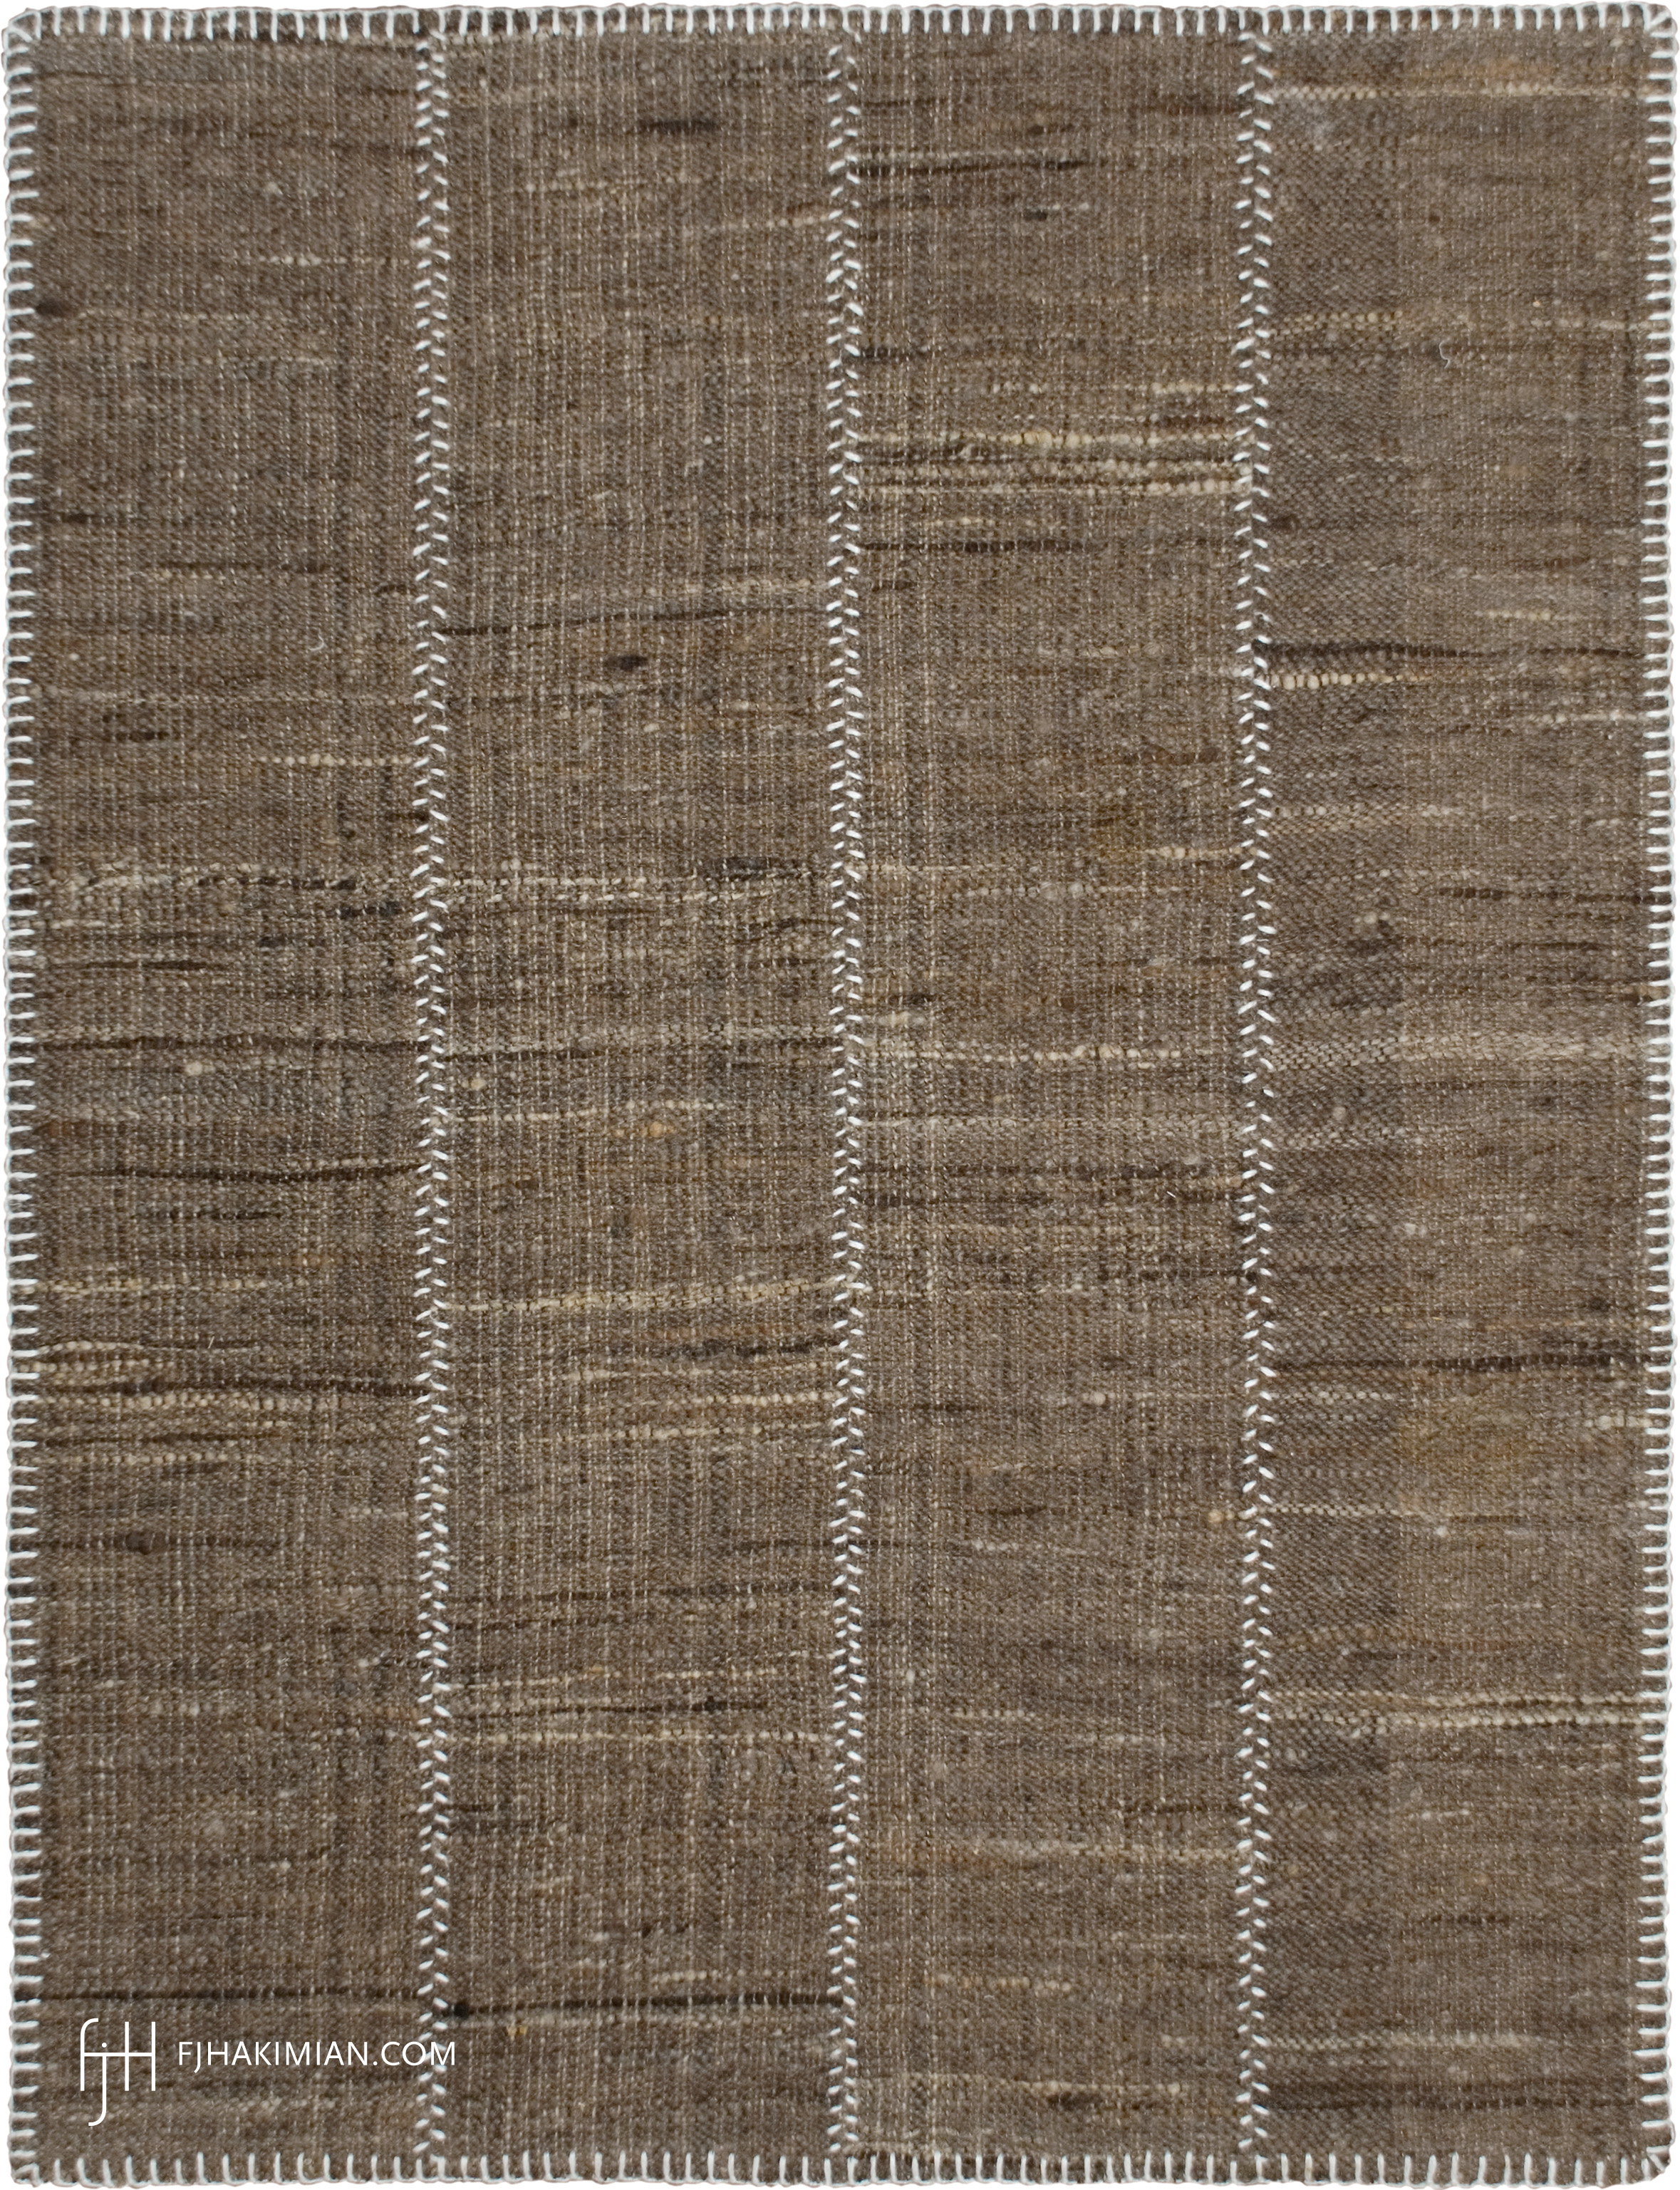 FJ Hakimian | 37406 | Custom Carpet